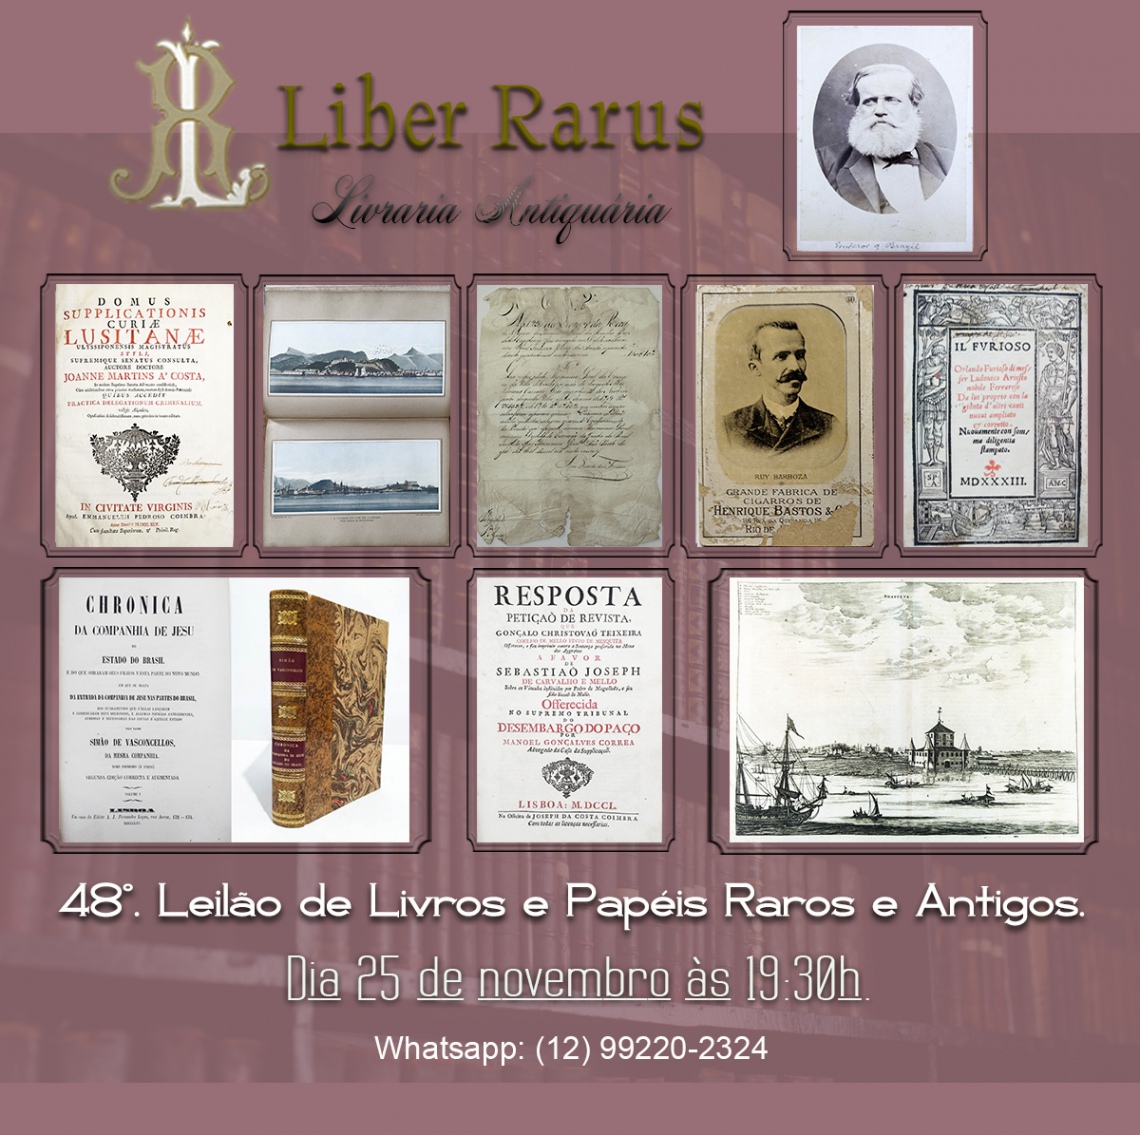 48º Leilão de Livros e Papéis Raros e Antigos - Liber Rarus - 25/11/2022 - 19:30h